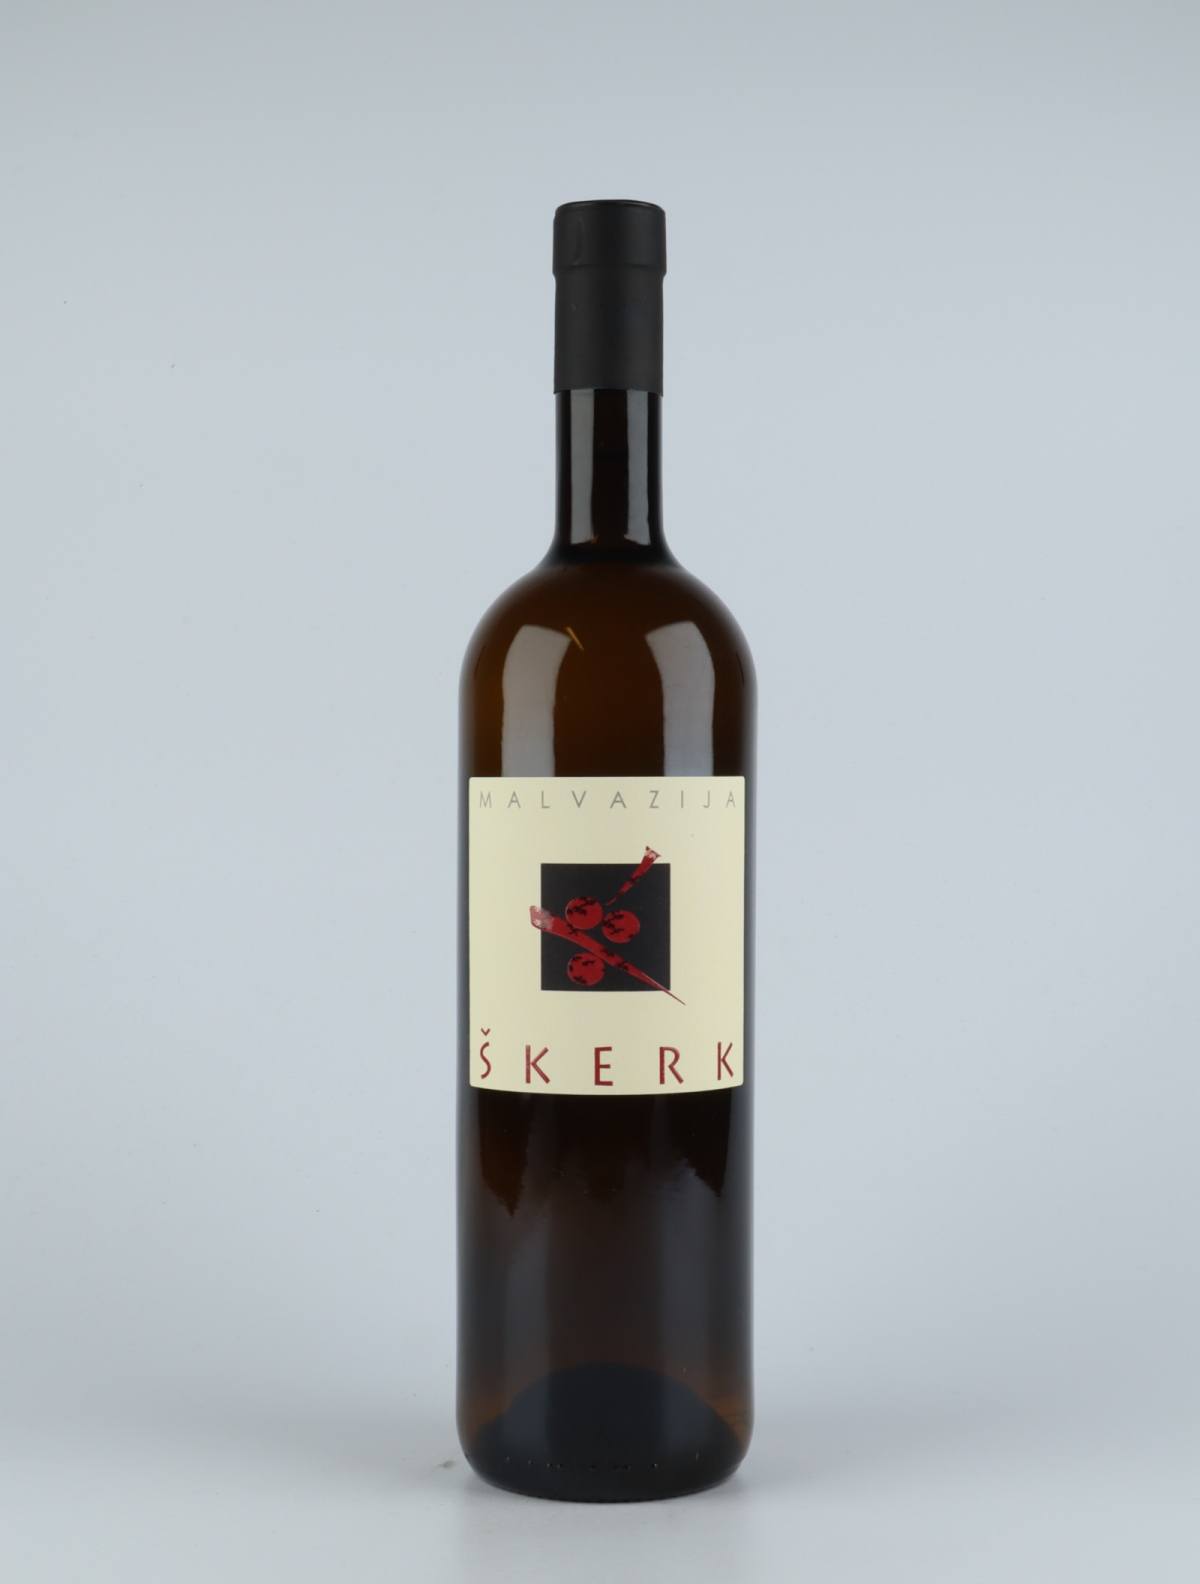 En flaske 2018 Malvasia Orange vin fra Skerk, Friuli i Italien